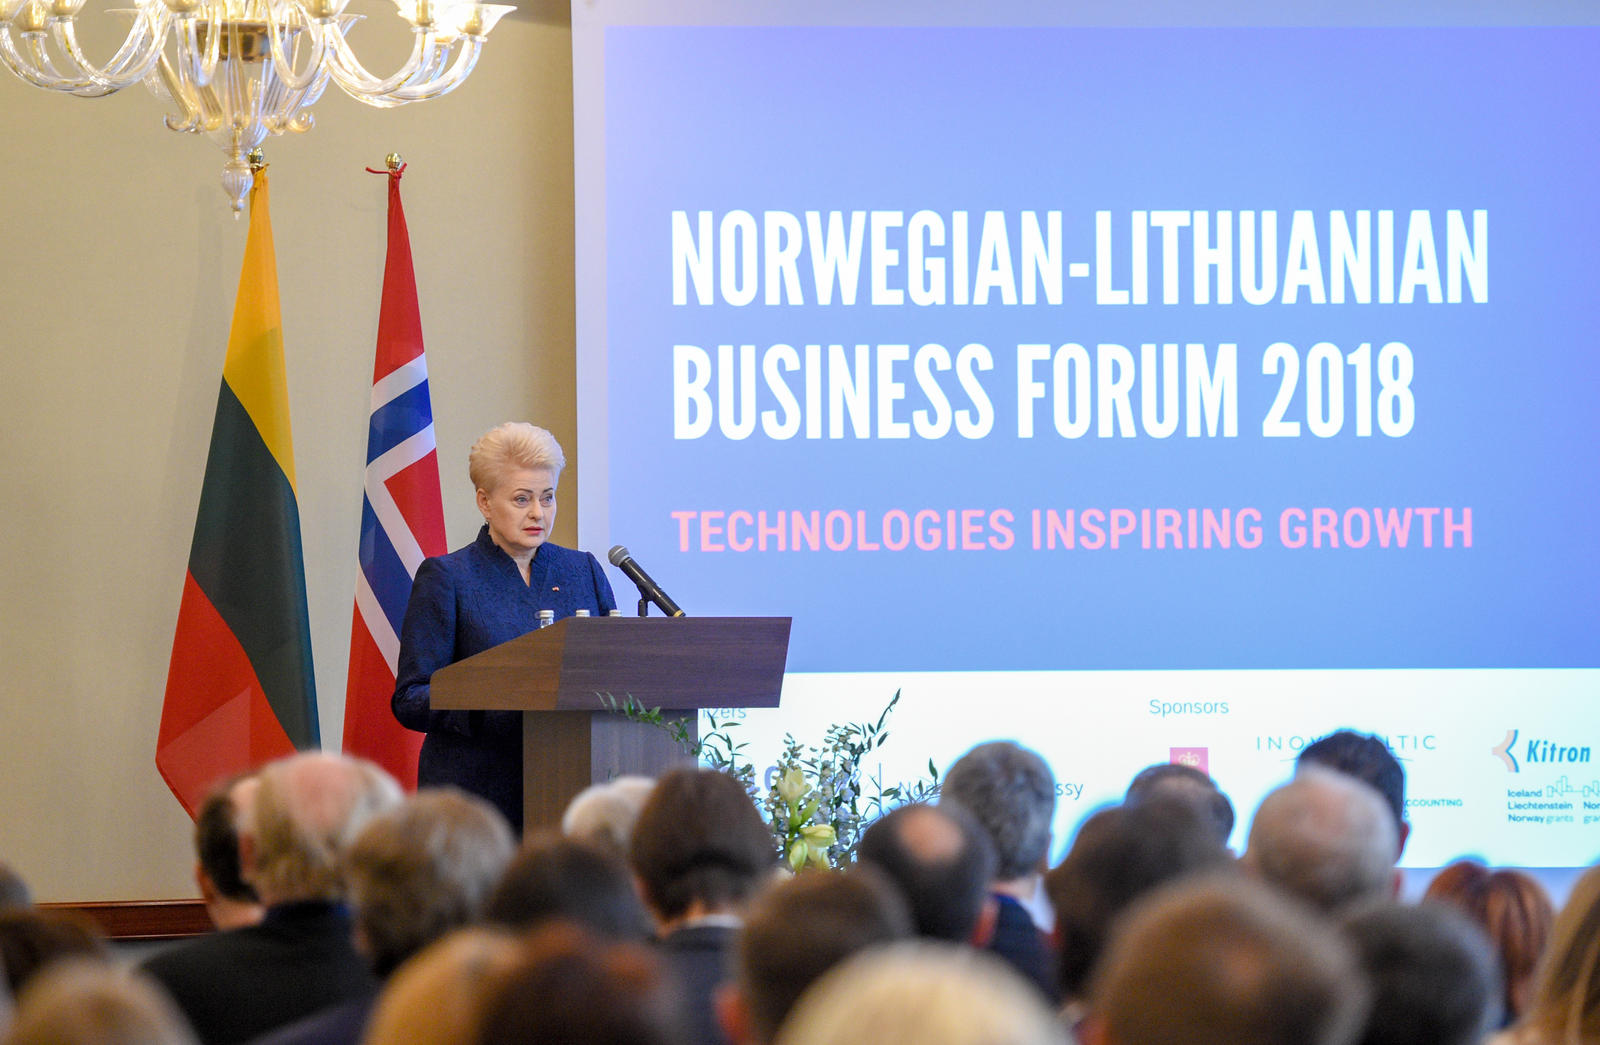 Norsk president og kongepar åpent næringsforum